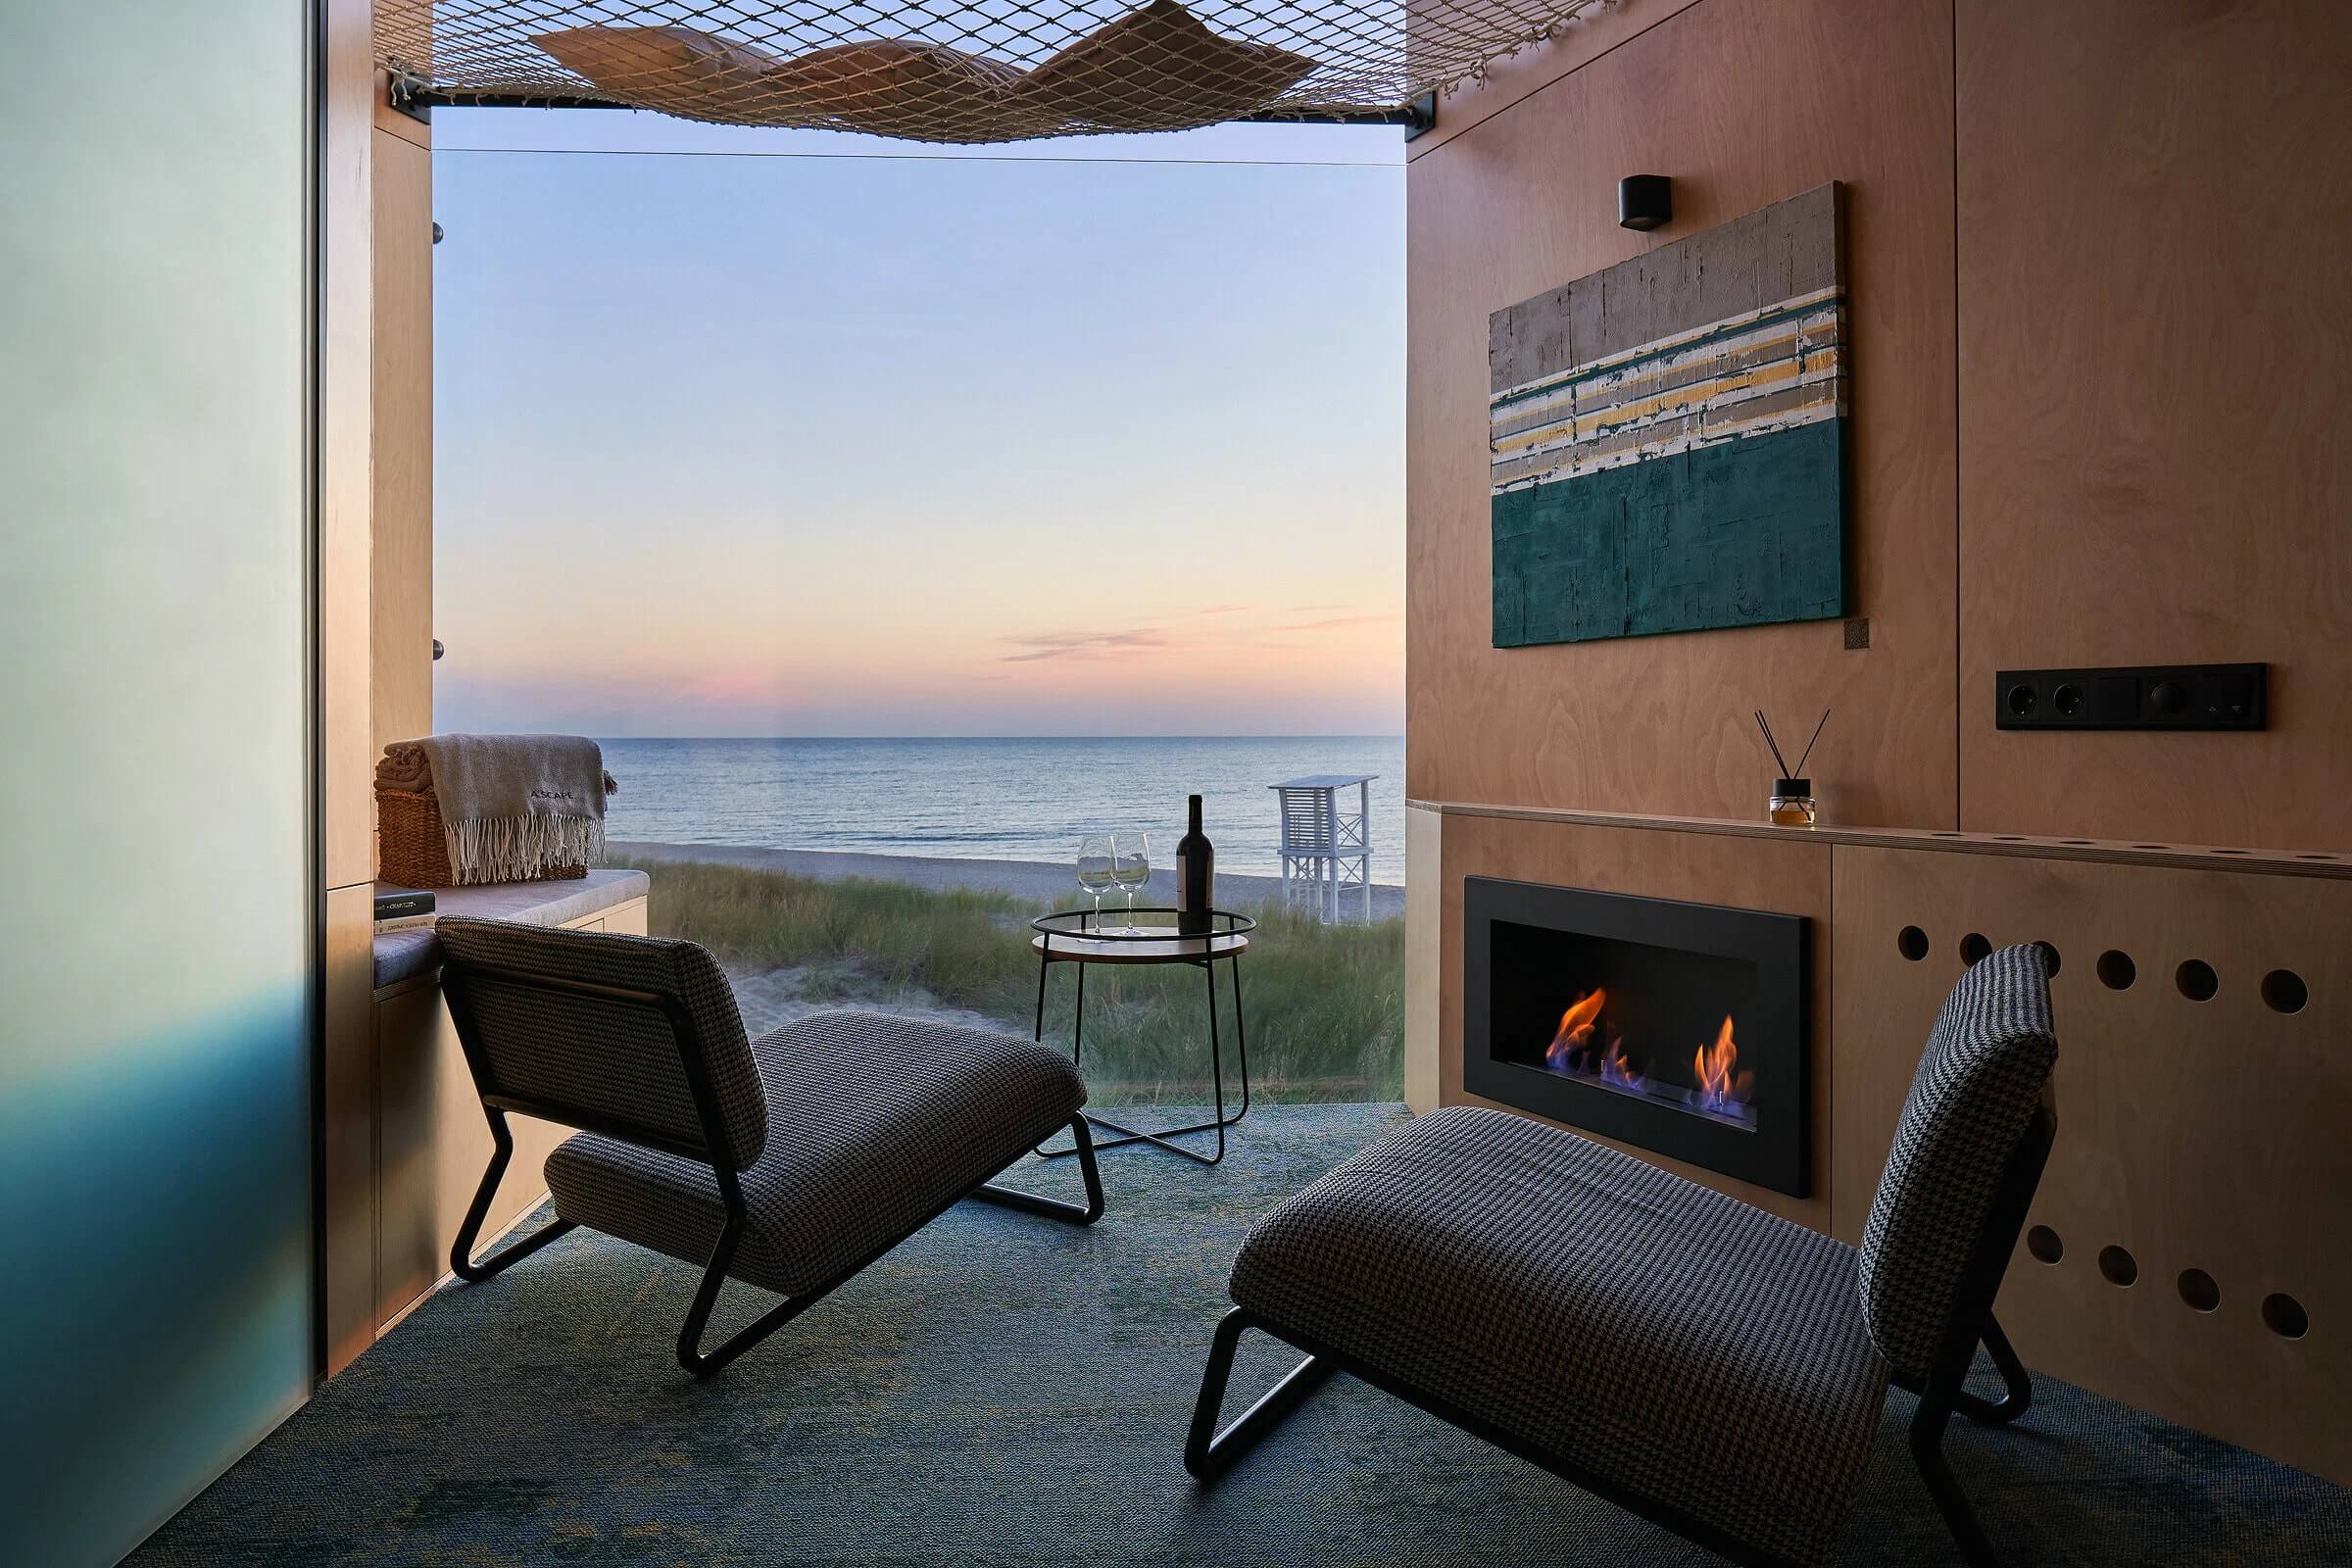 Камин, два кресла, бутылка вина и Балтийское море за панорамным окном.